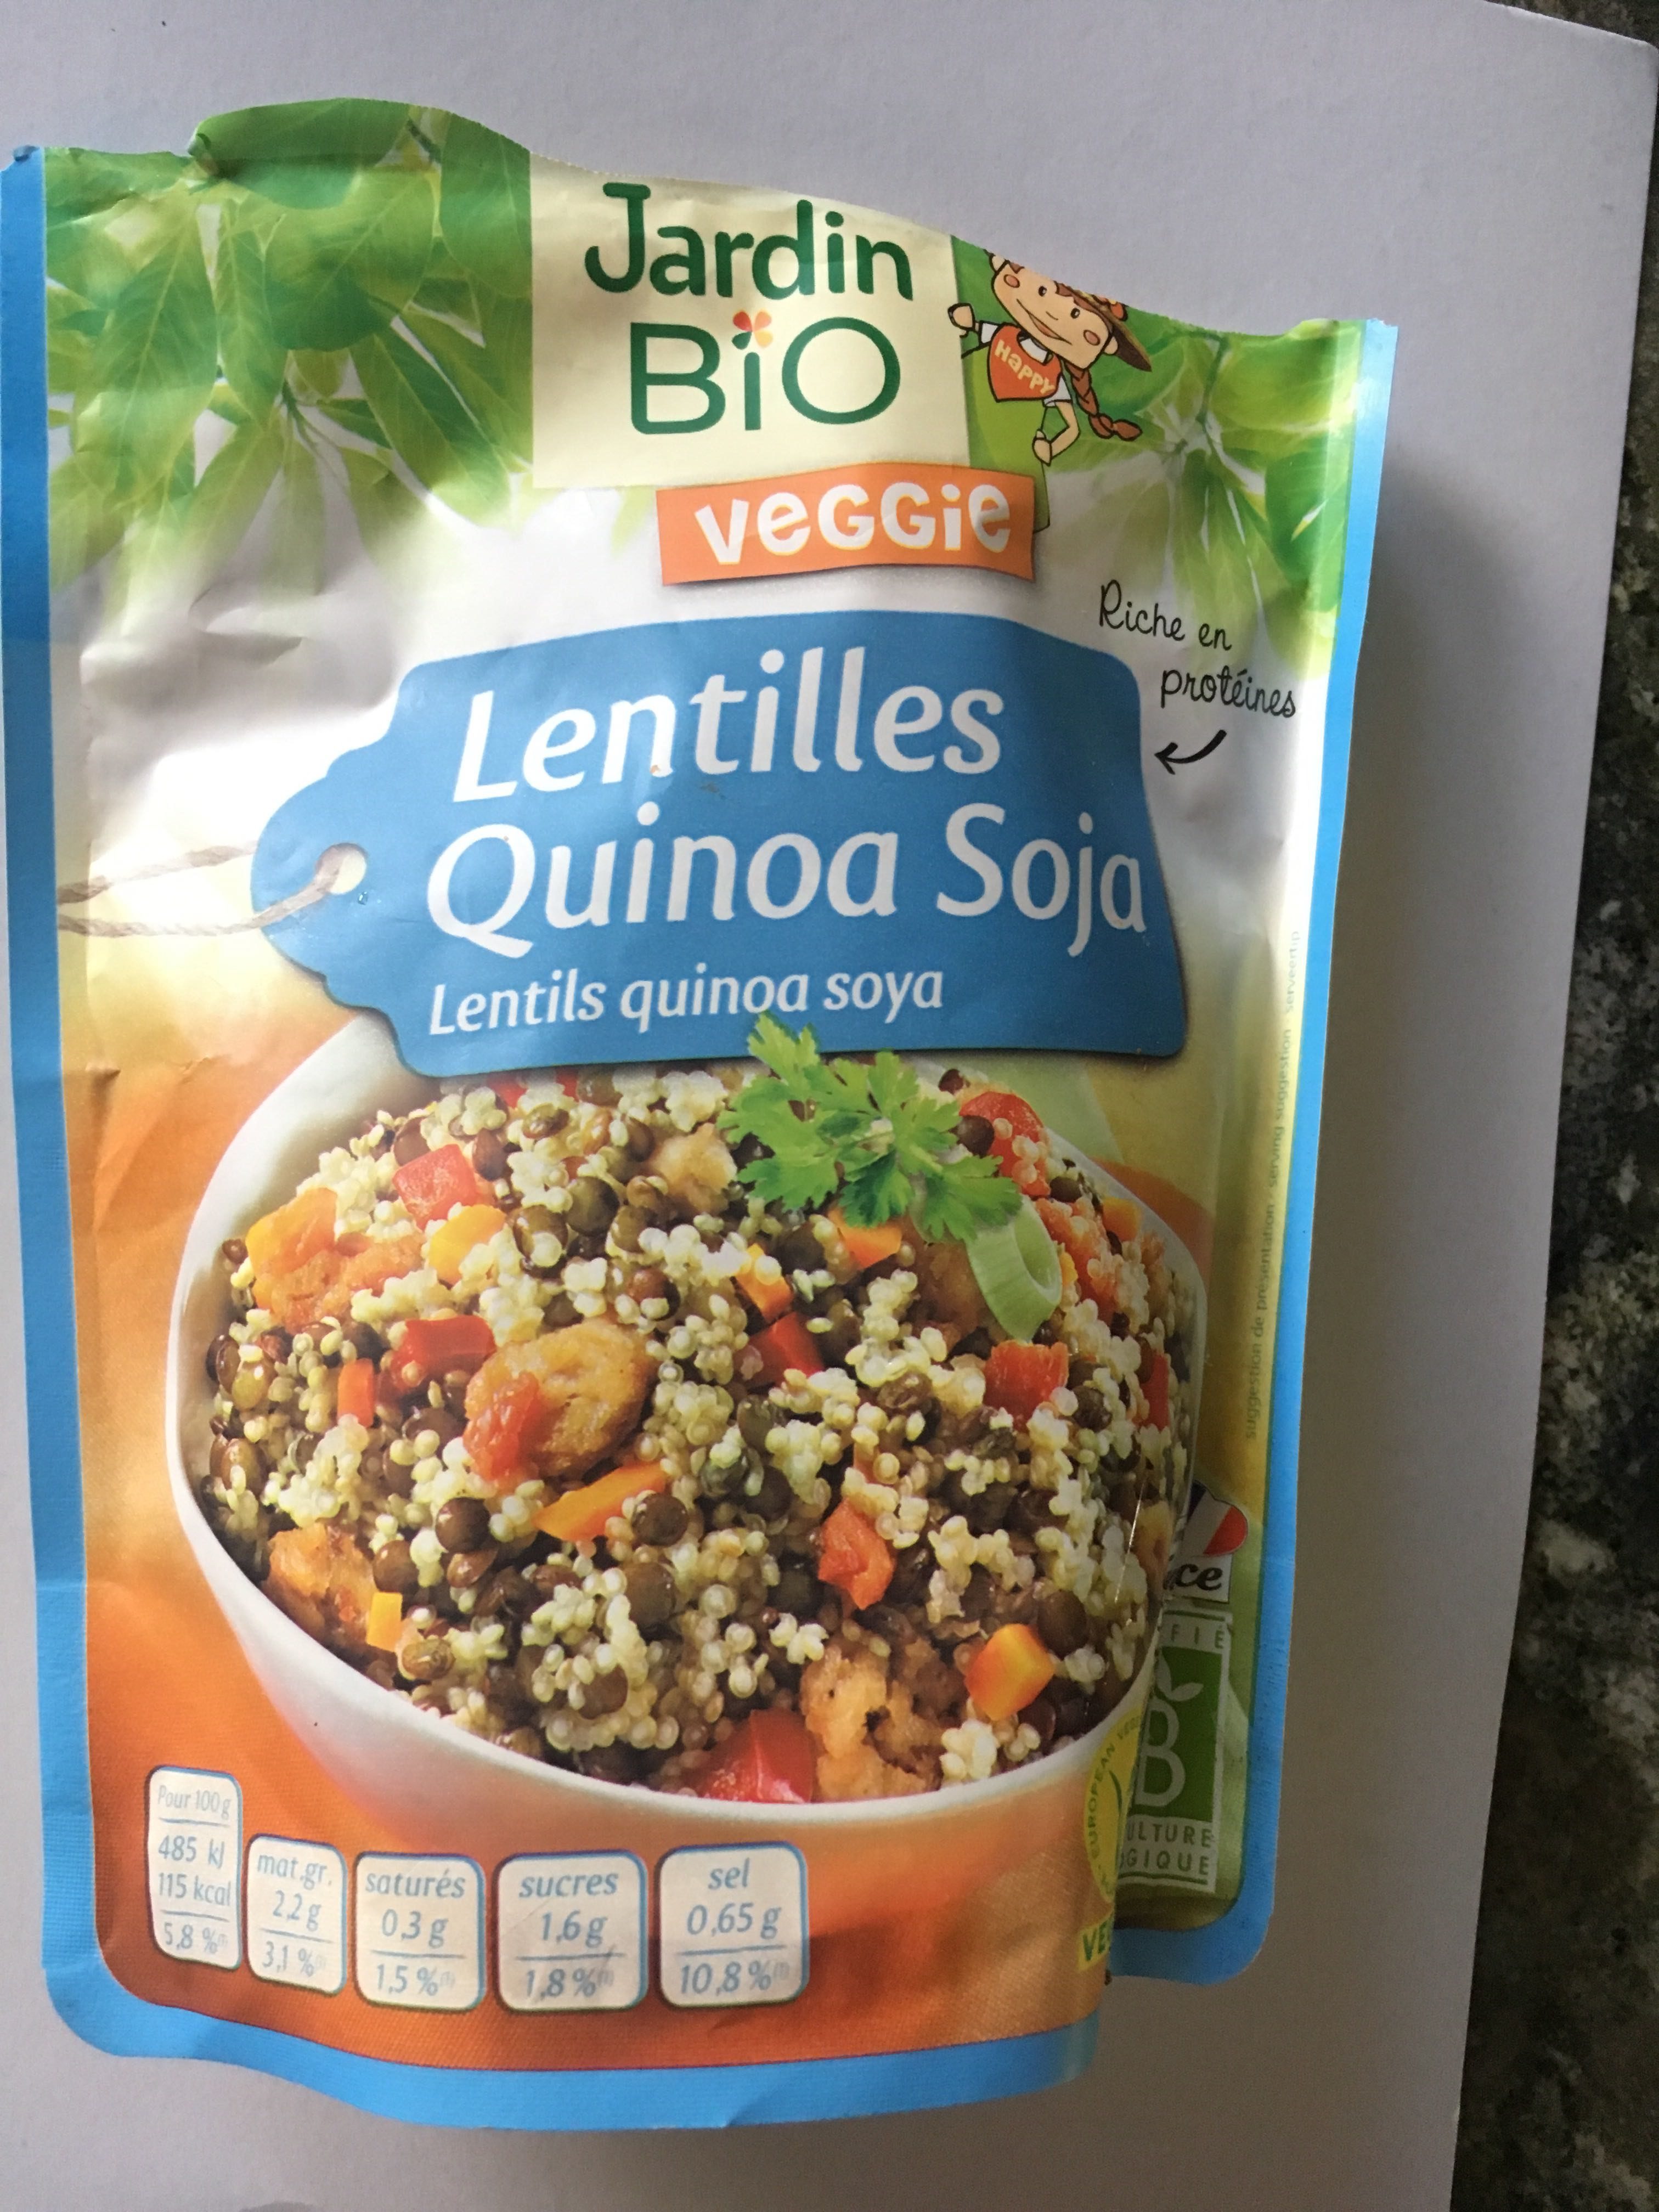 lentilles quinoa soja - Product - fr